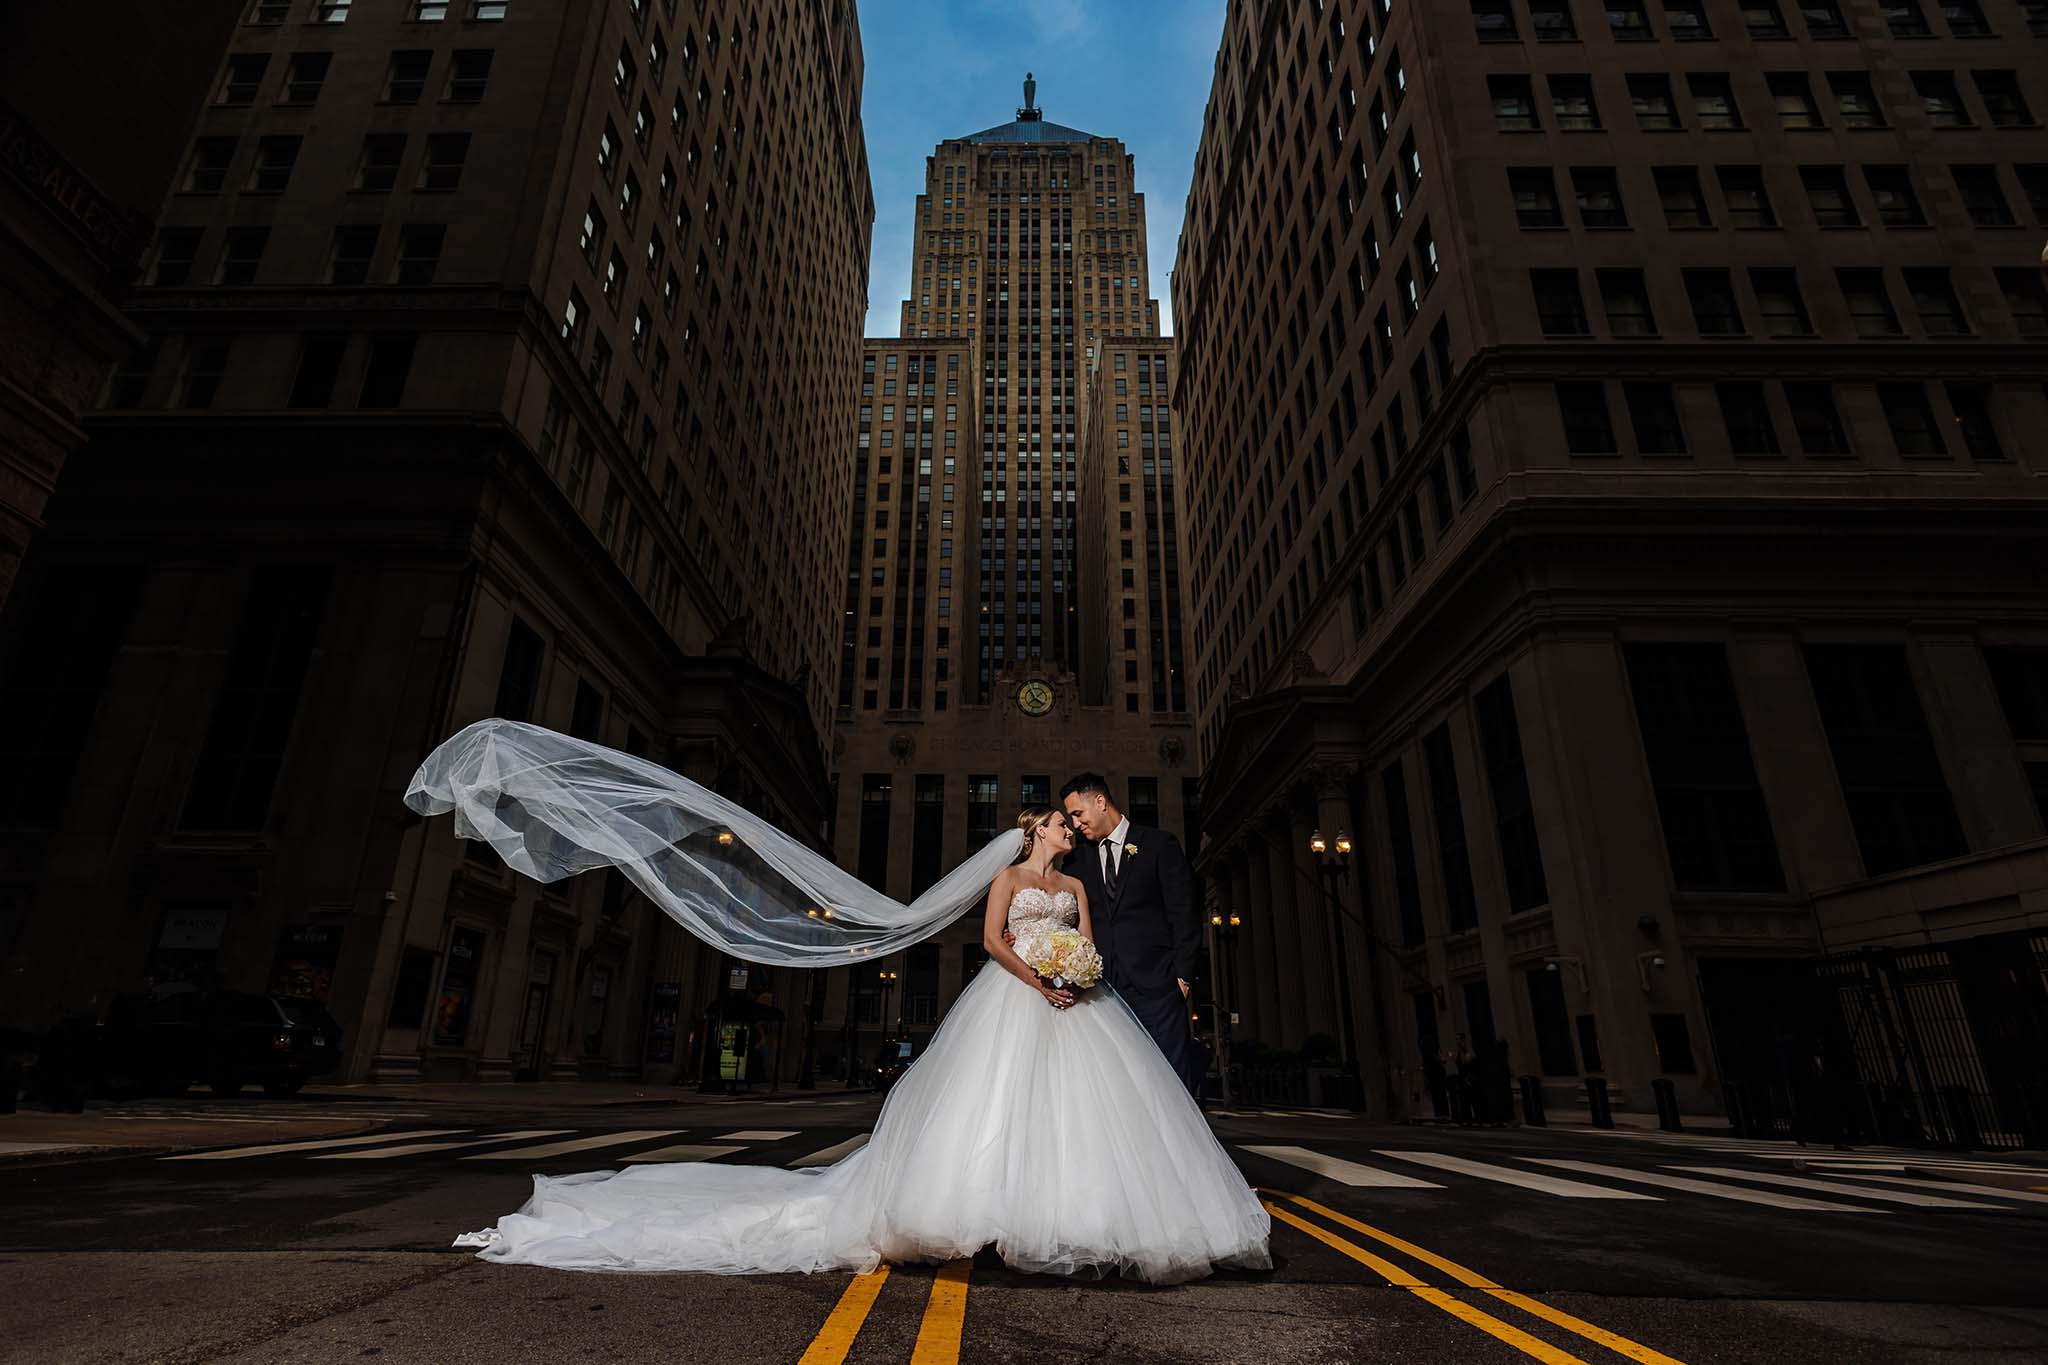 Naperville wedding photographer – Illinois